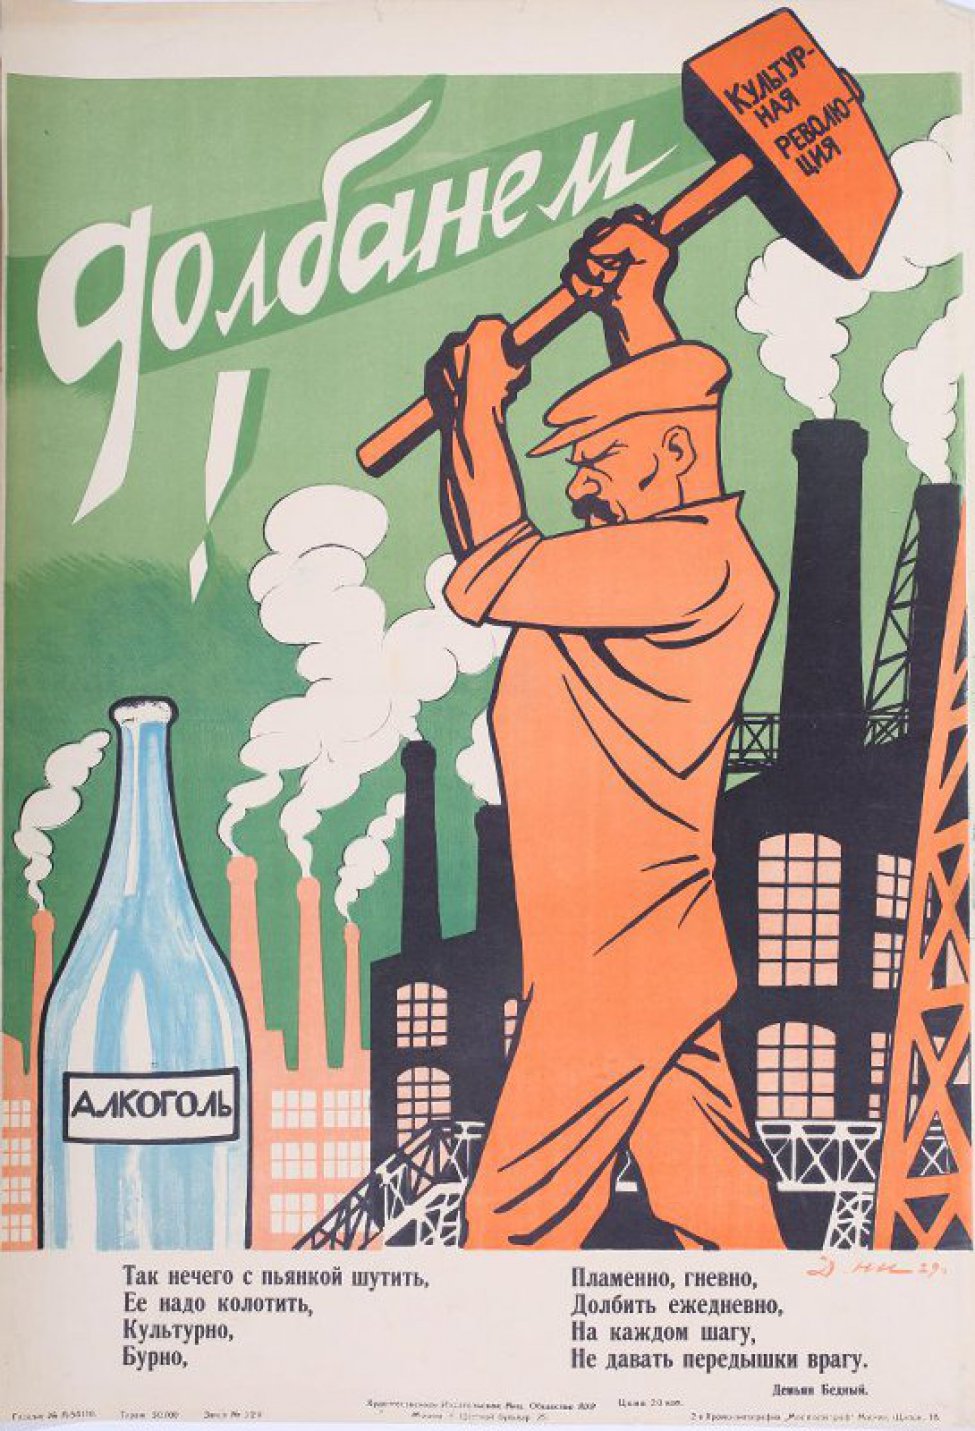 Изображено рабочий занесший молот над большой бутылкой с надписью:" Алкоголь".На втором плане заводские строения. Внизу текст: Д.Бедного:" Так нечего... врагу".